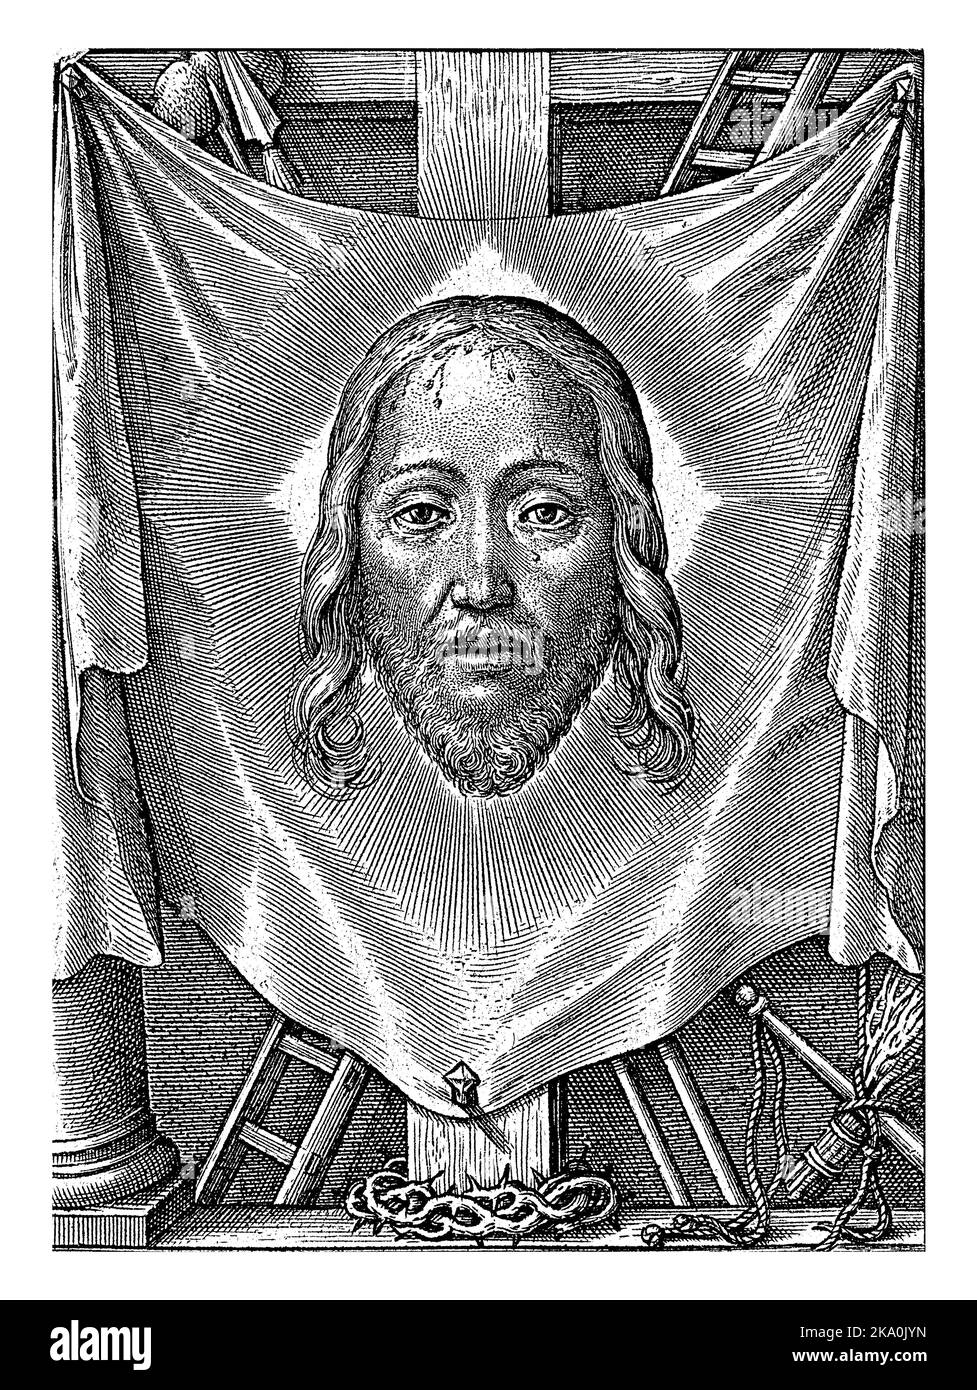 Il sudario sacro, Hieronymus Wierix, 1563 - prima del 1619 la tela di sudore di Veronica, con un'impronta del volto di Cristo, pende sulla croce. Intorno al panno Foto Stock